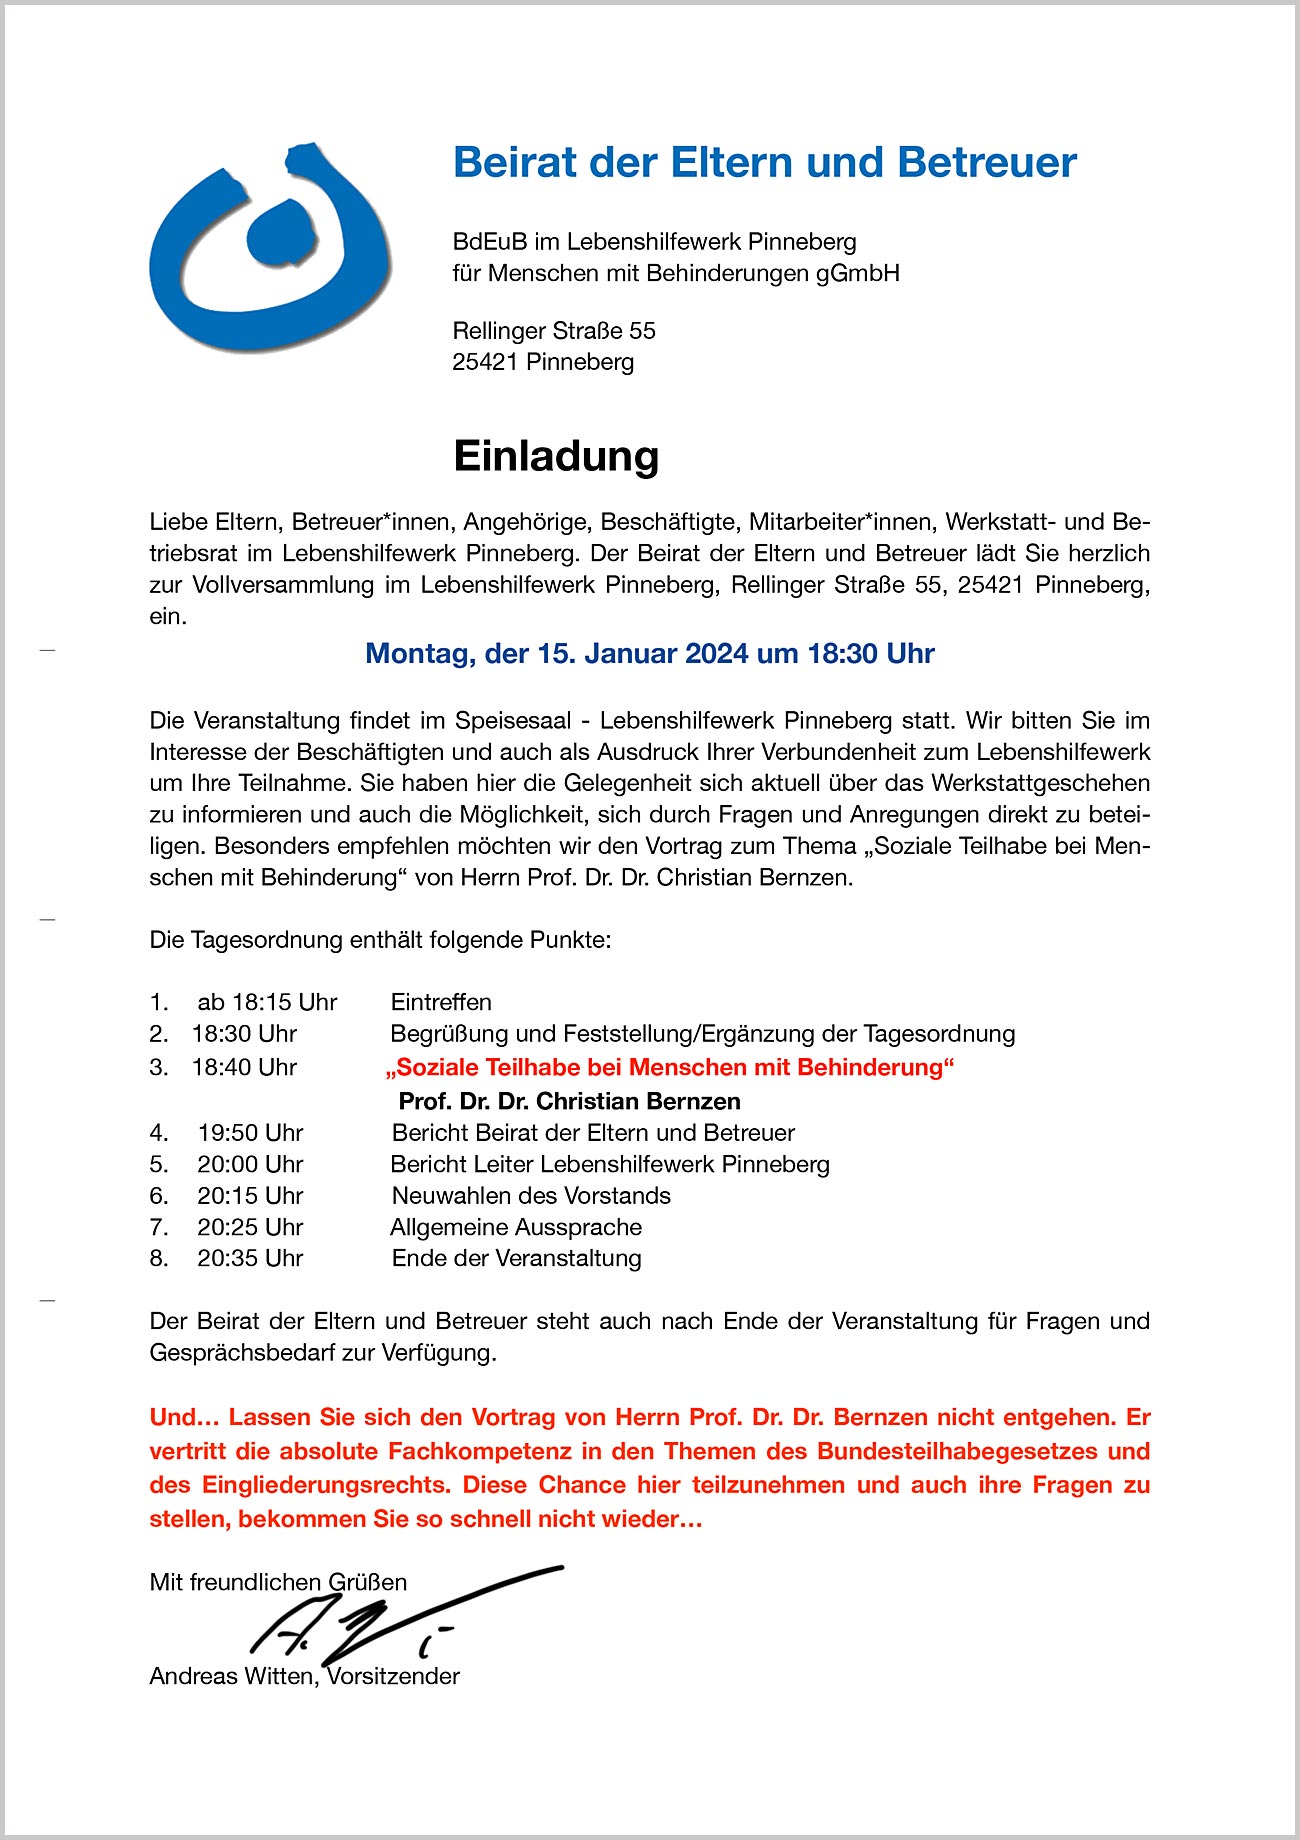 Einladung zur Vollversammlung des Beirats der Eltern und Betreuer im Lebenshilfewerk Pinneberg